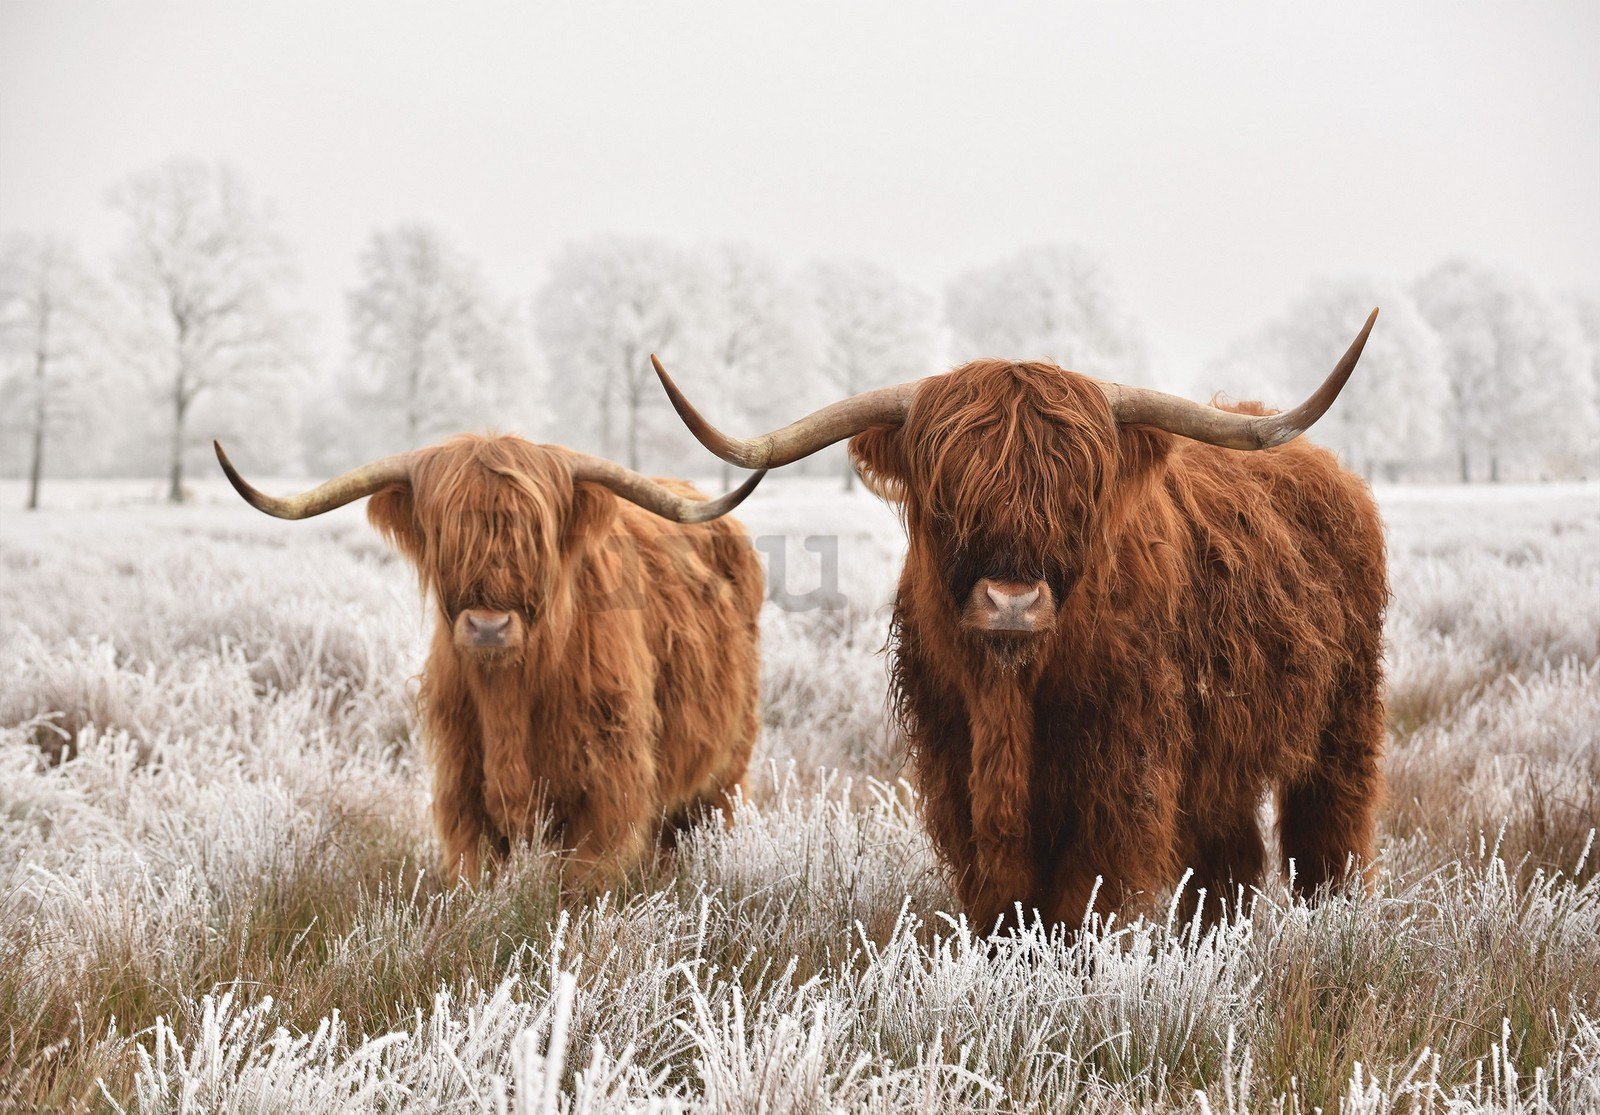 Vlies foto tapeta: Višavsko škotsko govedo (2) - 368x254 cm